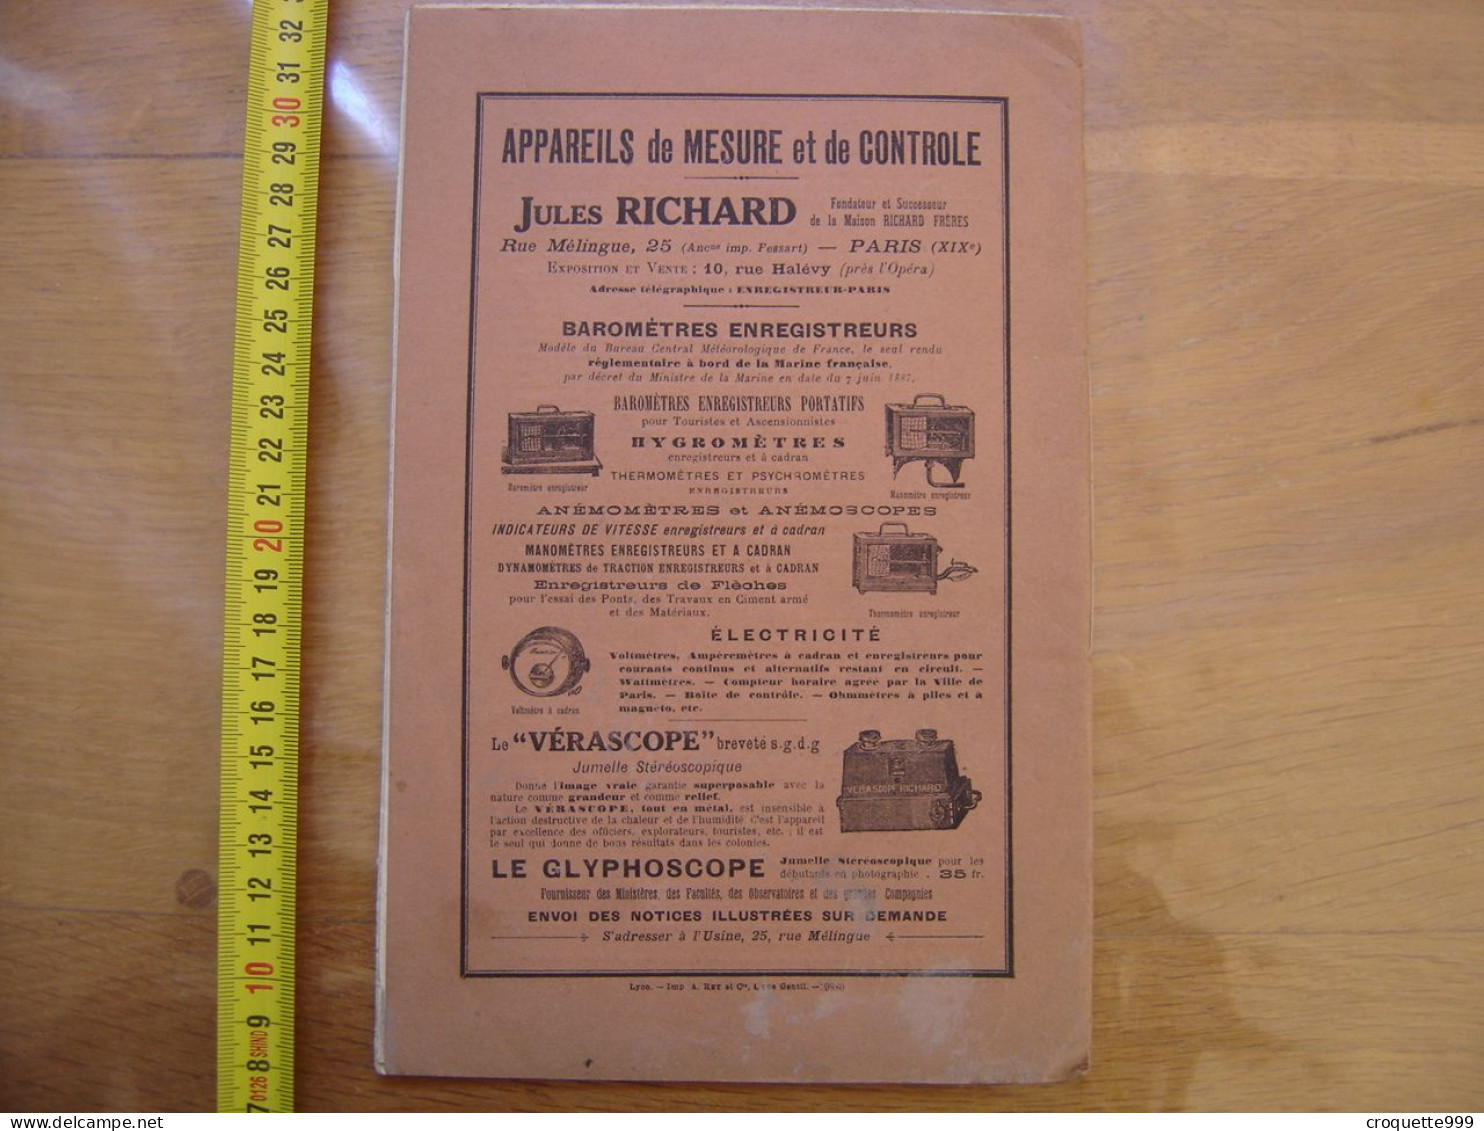 1911 Bulletin L'ECHO des LABORATOIRES Publicites Jules Richard Microscope